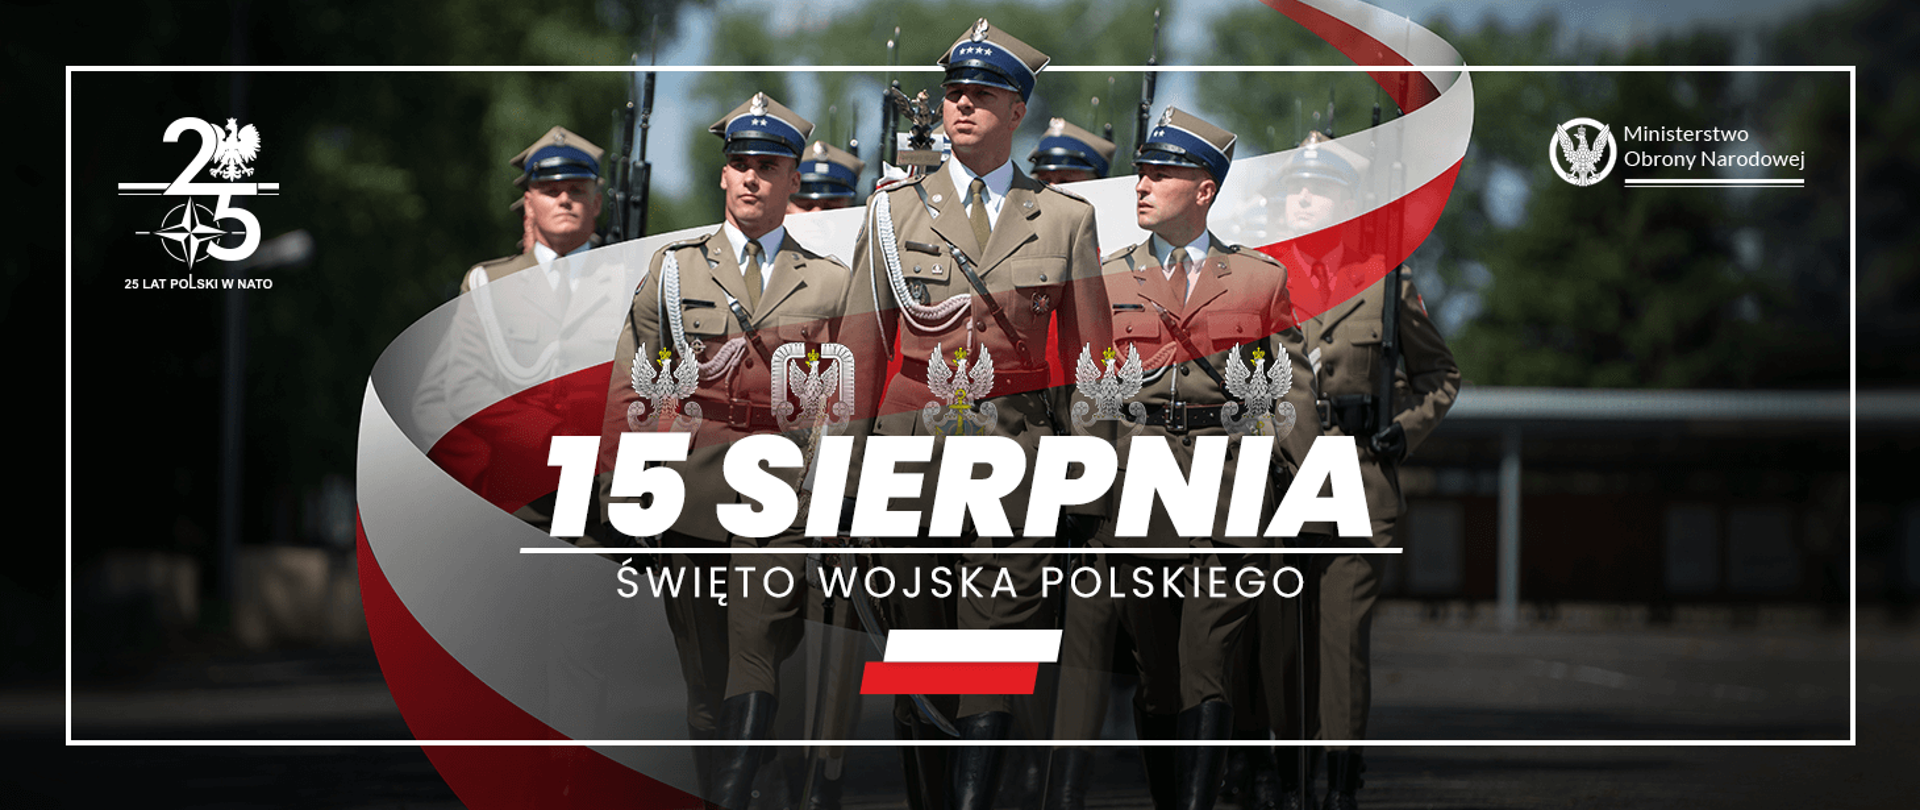 Ministerstwo Obrony Narodowej zaprasza na defiladę oraz do wspólnego obchodzenia Święta Wojska Polskiego. 